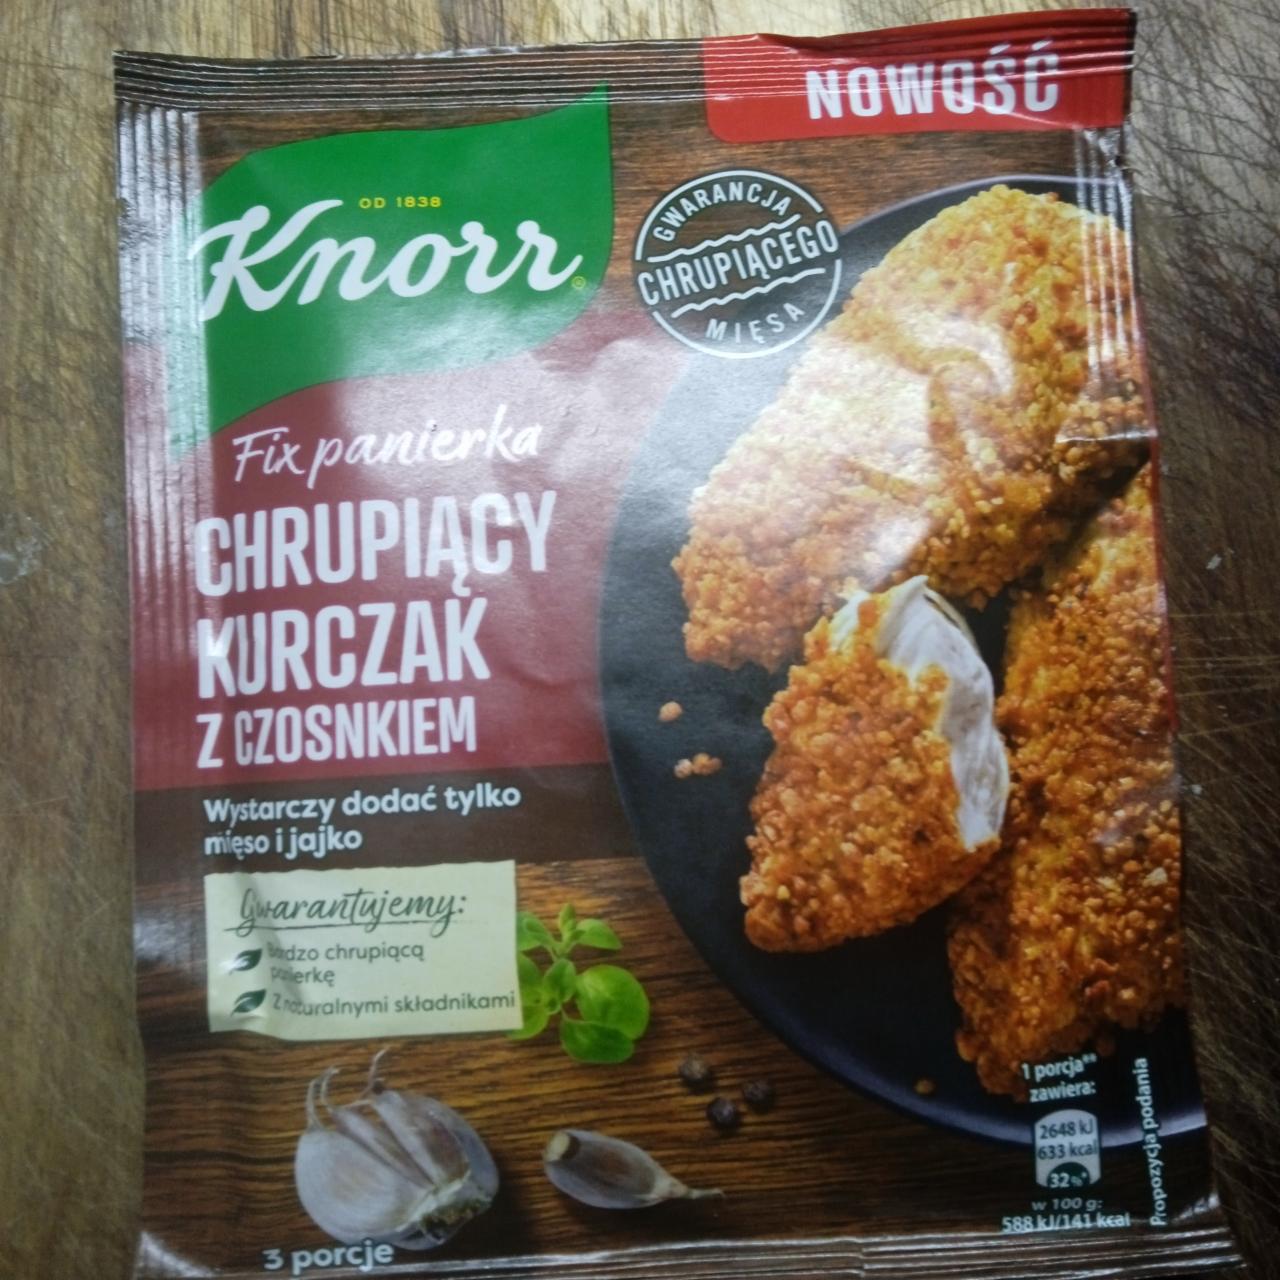 Fotografie - Fix panierka Chrupiacy kurczak z czosnkiem Knorr